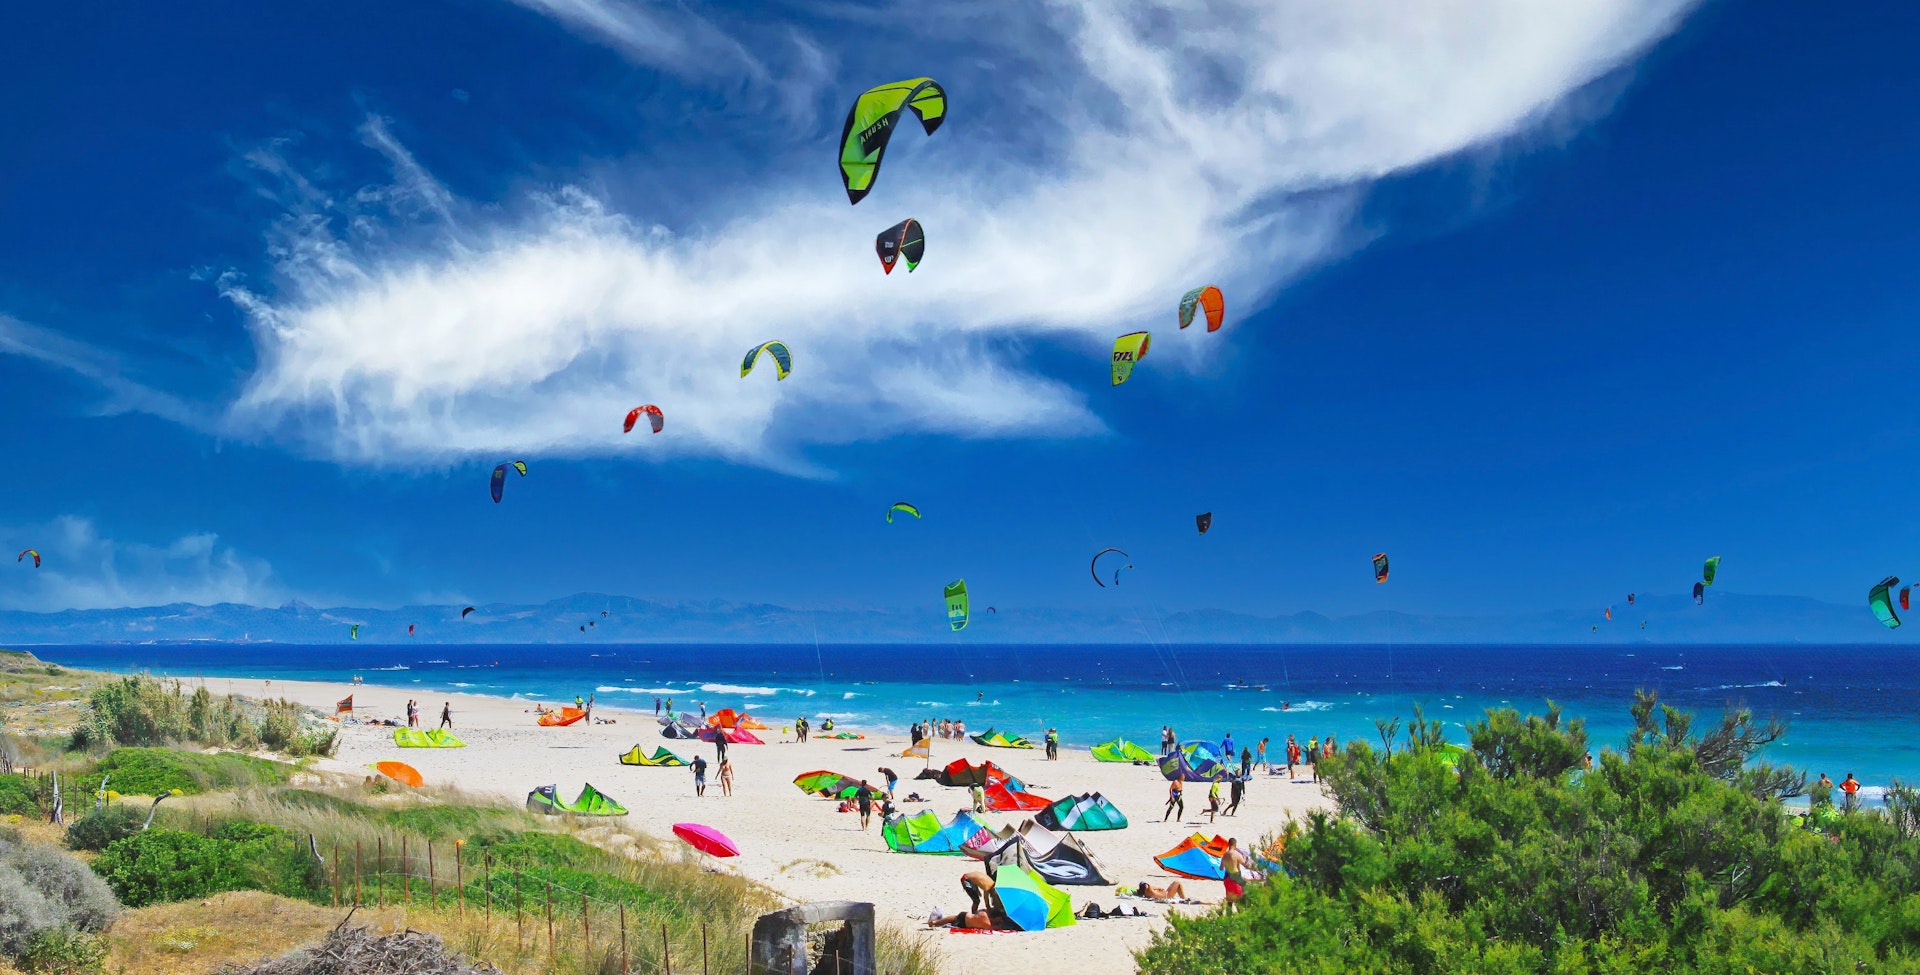 Kitesurfing at Playa de Bolonia, Spain